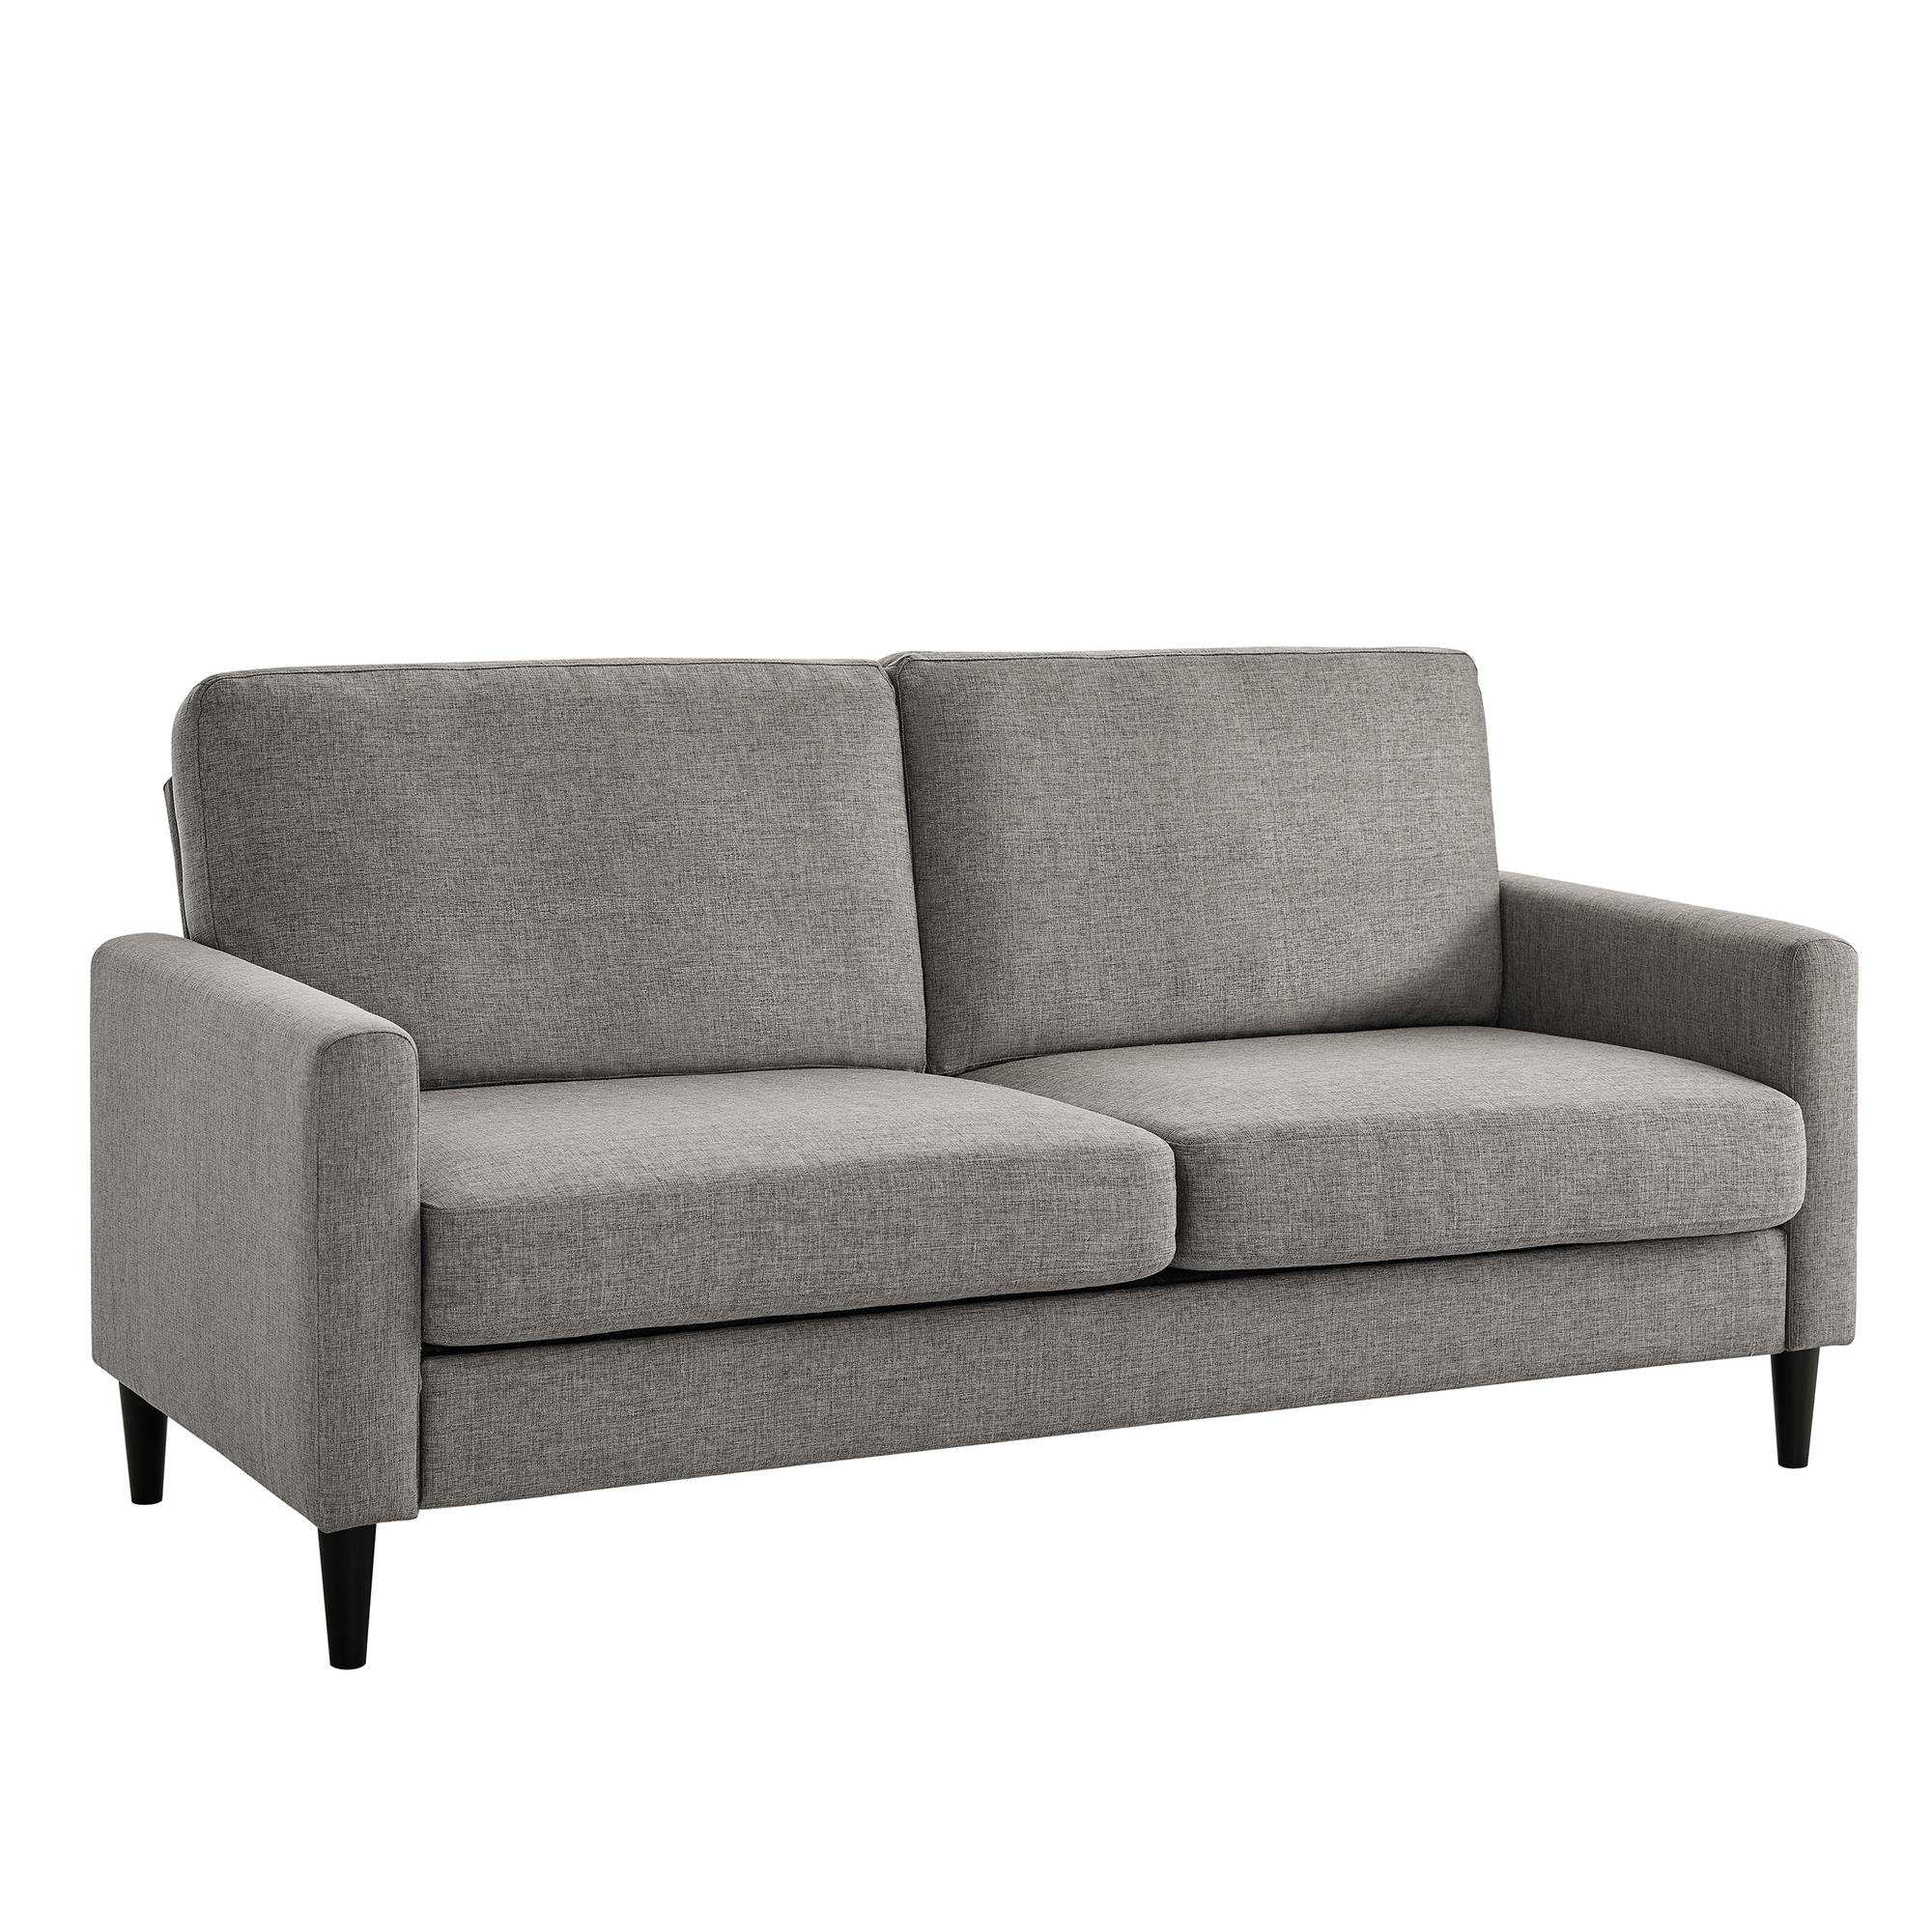 Kaci, Stoffbezug, Breite 3-Sitzer loft24 Couch, cm 188 Sofa